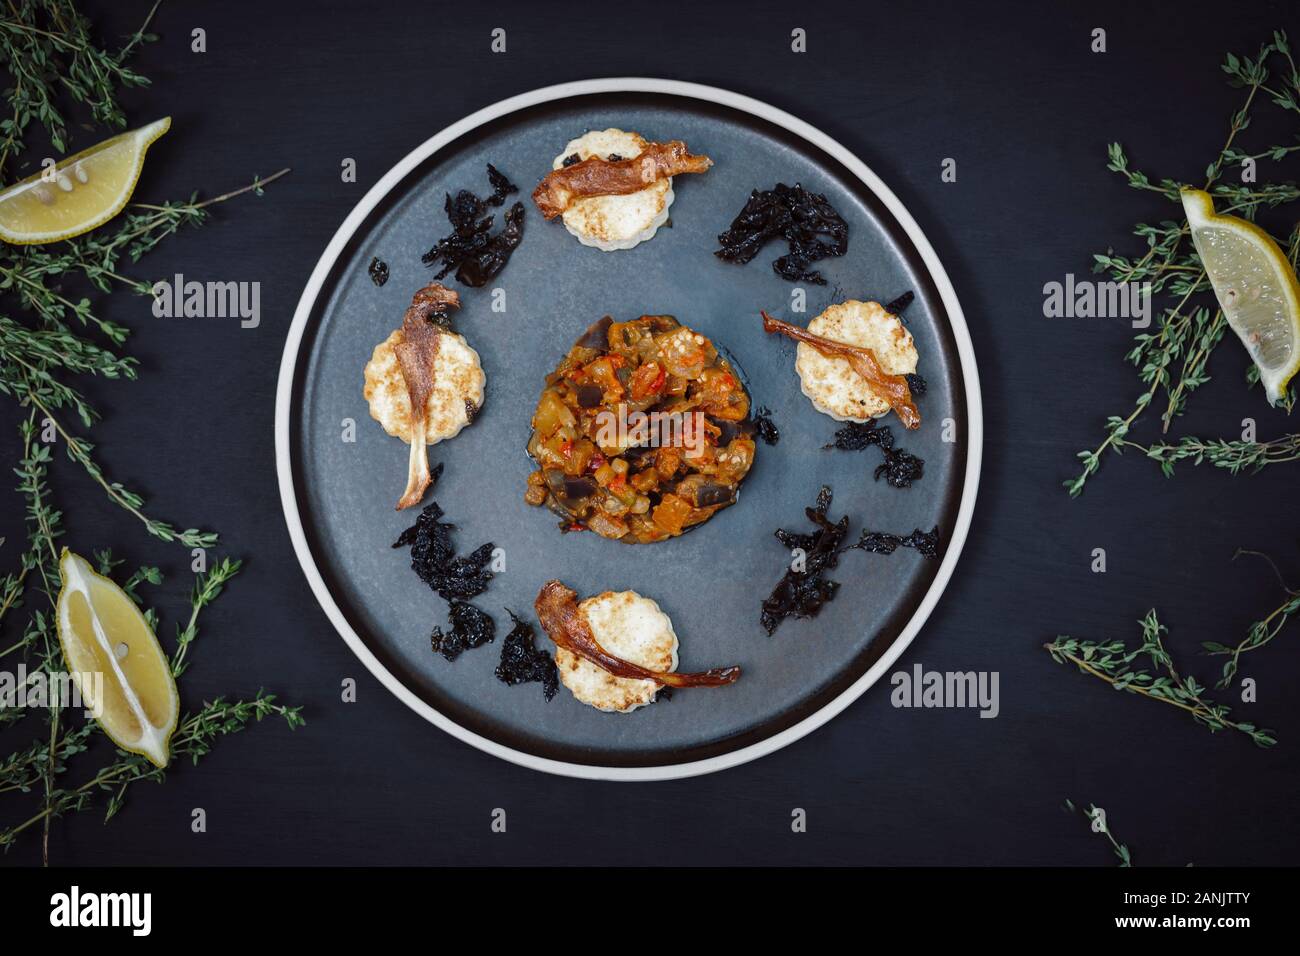 Veganer Hauptgang von Aubergine oder Aubergine & Tomaten-Ragu mit Tofu, Parsnip & Seetang auf einem Teller auf schwarzem Grund serviert. Draufsicht. Flaches Lay Stockfoto